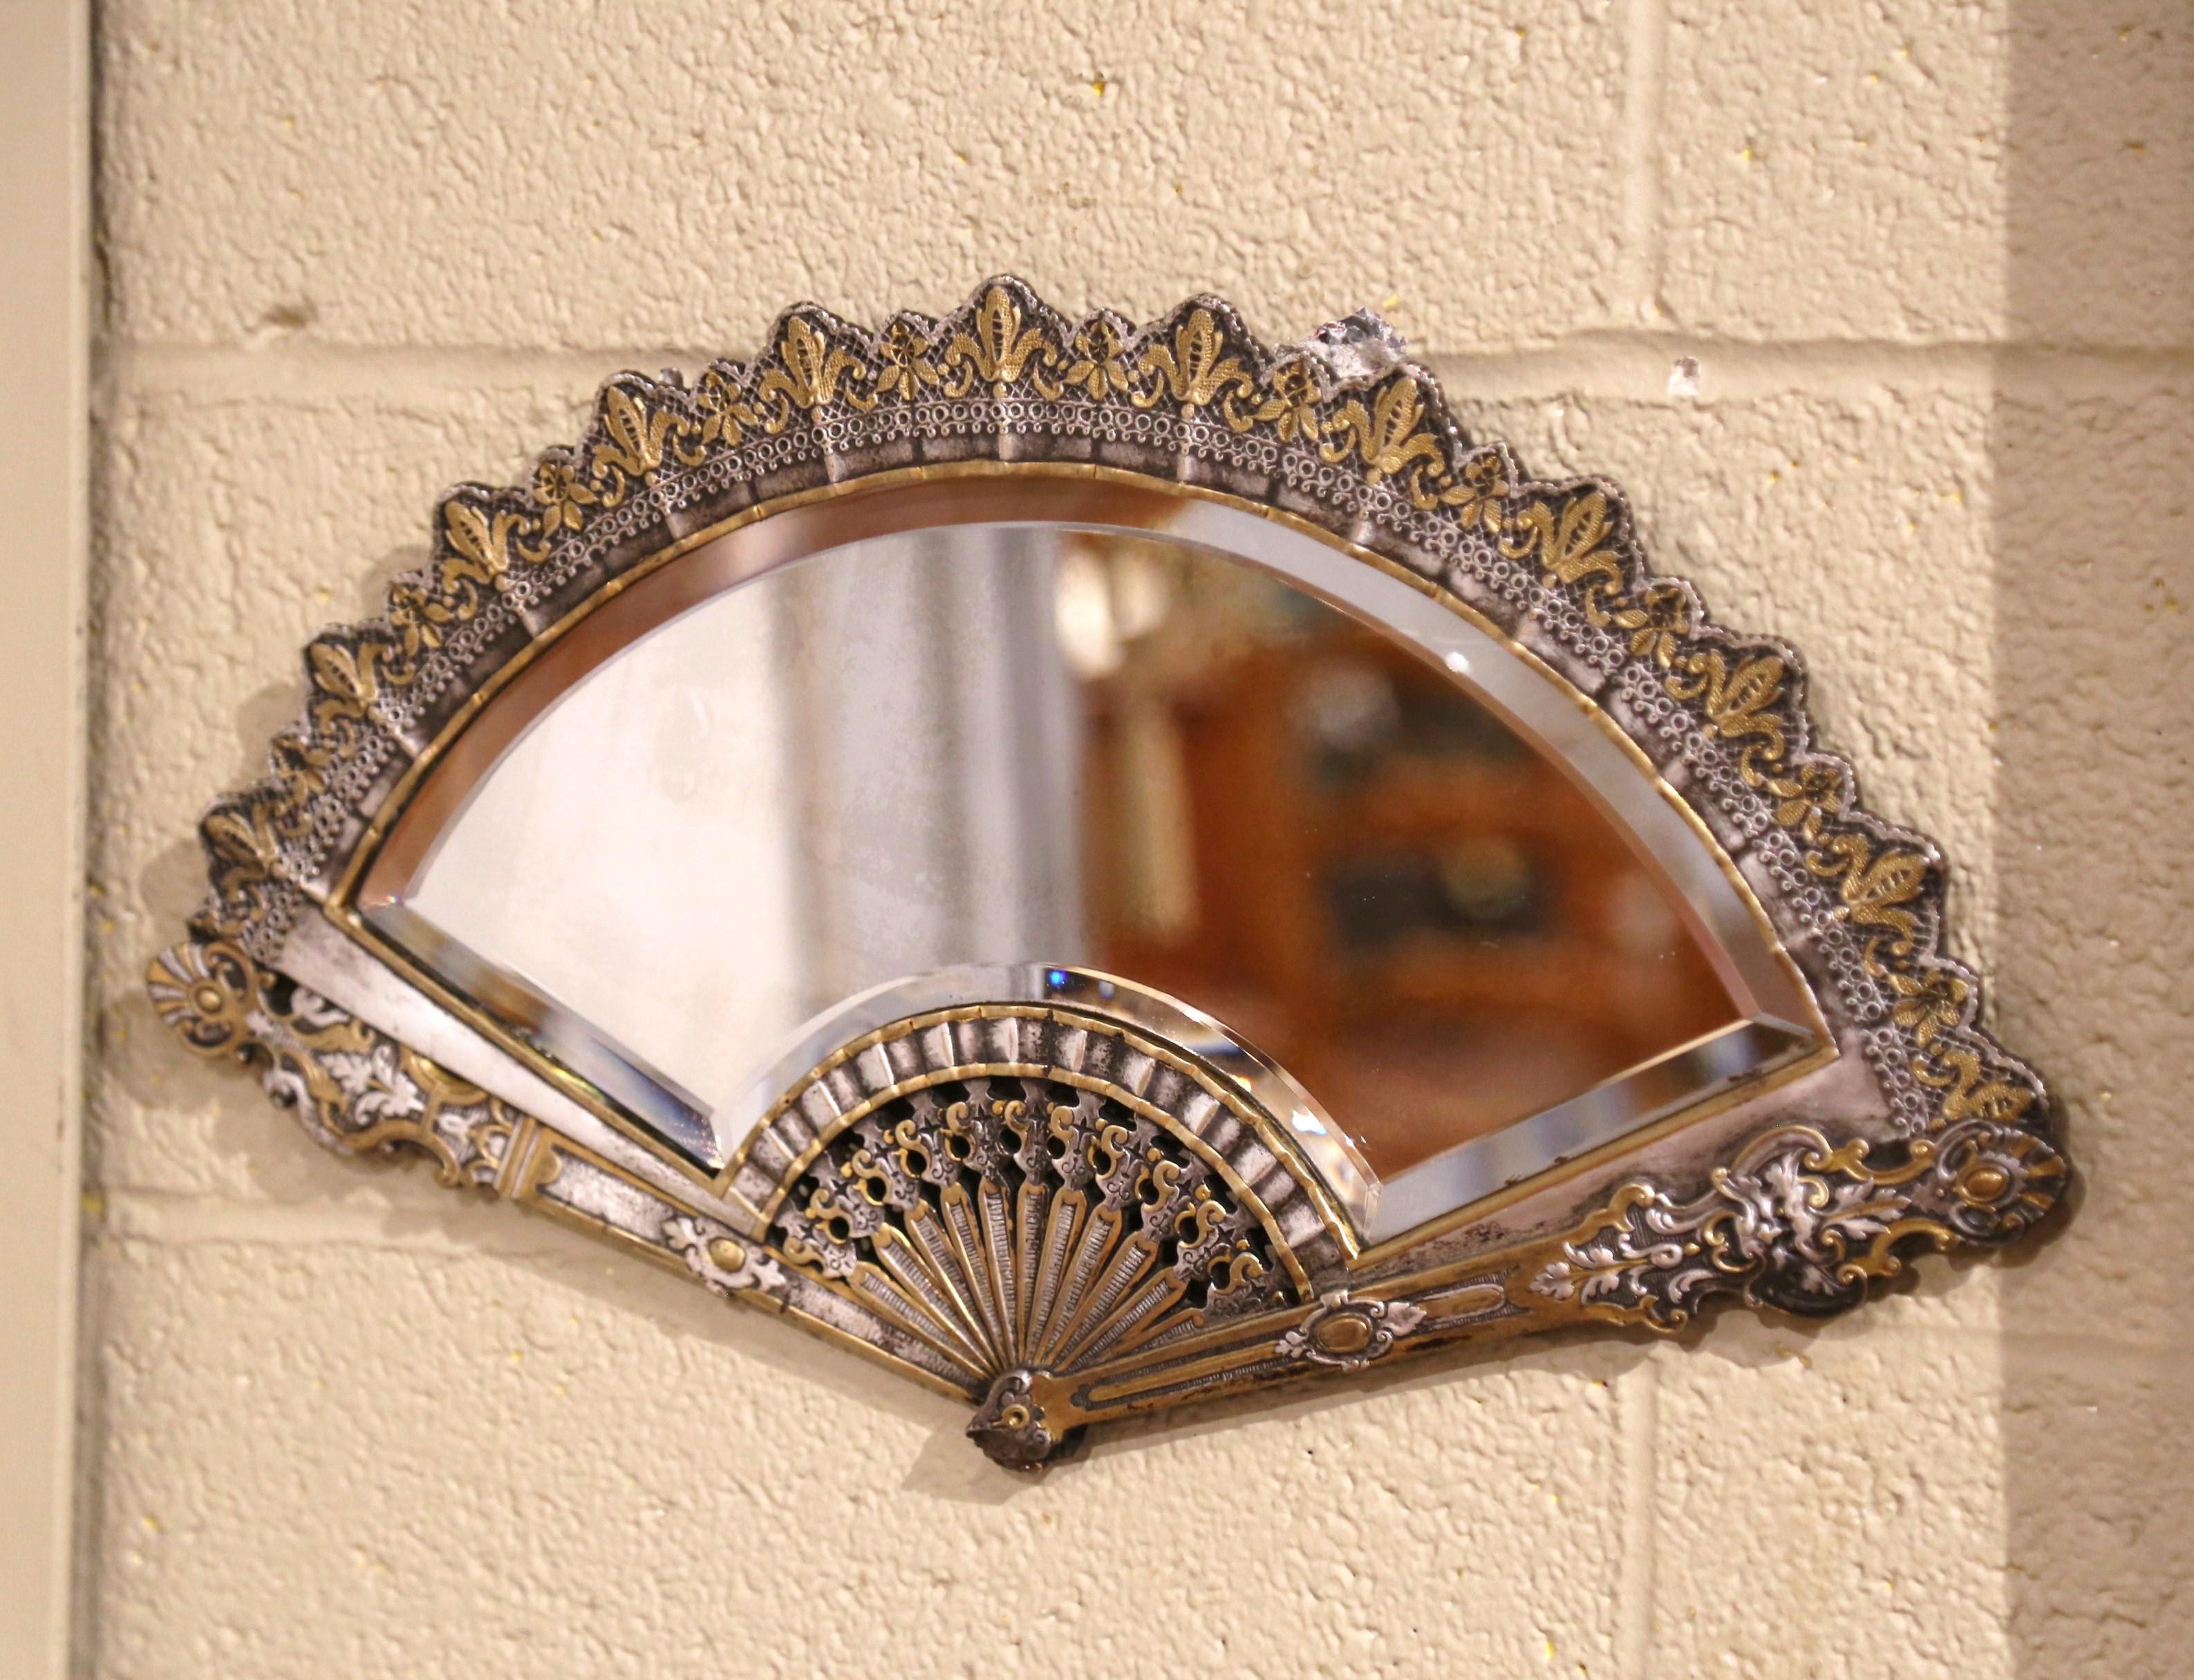 Décorez un mur, un meuble-lavabo ou une commode avec ce miroir en éventail complexe. Fabriqué en France, vers 1880, ce bronze lourd à la forme unique présente des détails dorés finement ciselés. Le miroir mural est en excellent état, compte tenu de